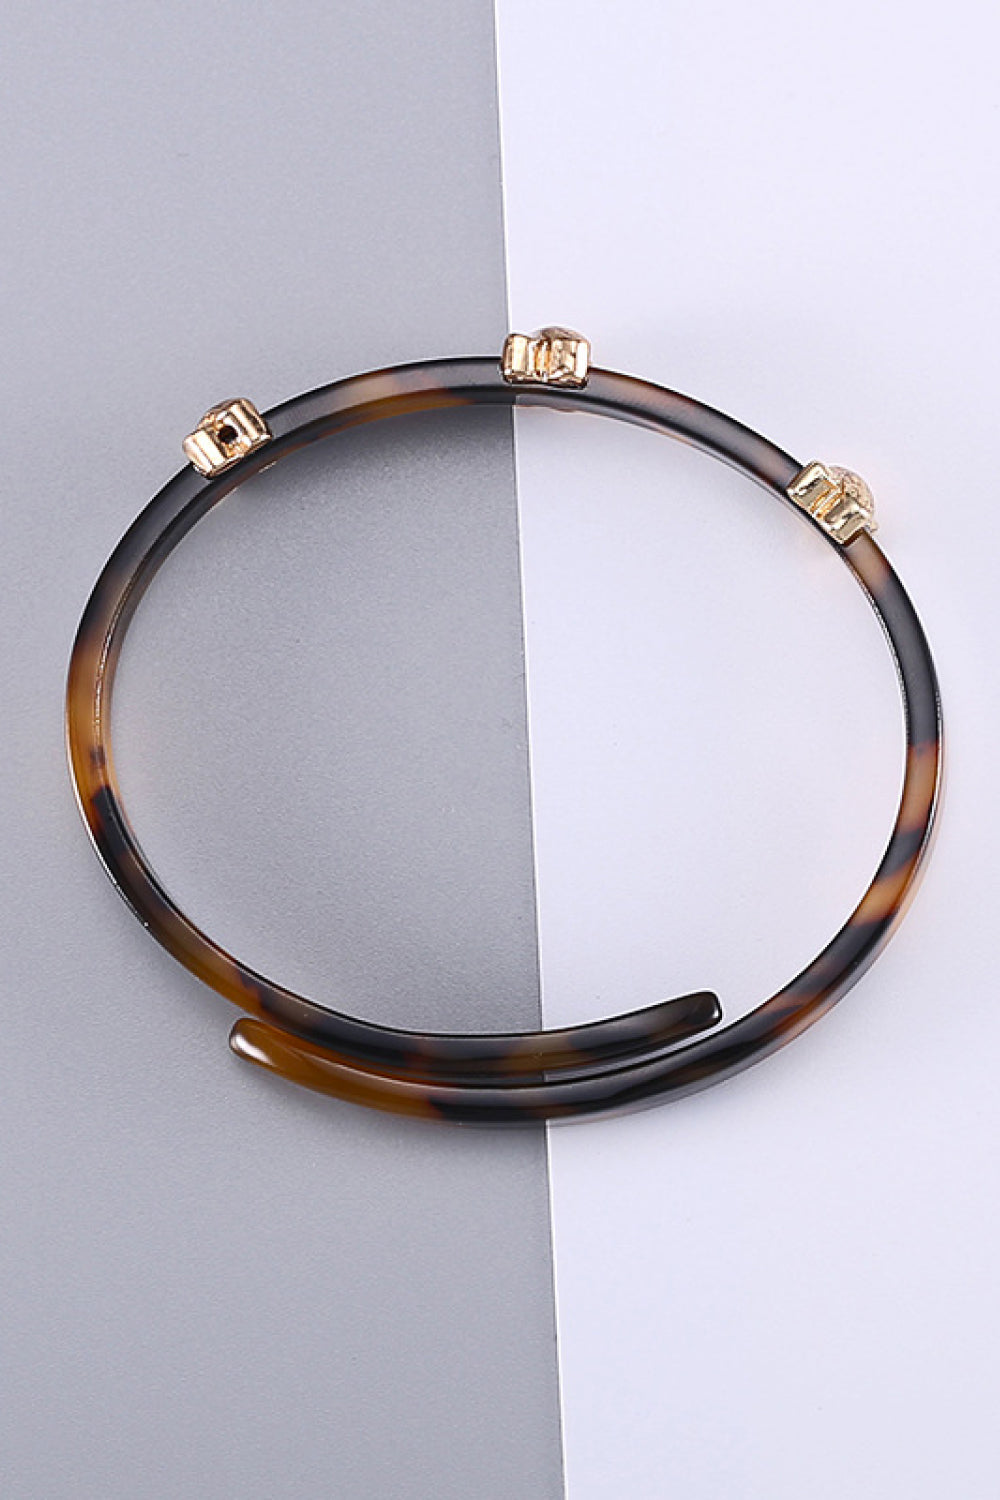 Happy Beginnings Adjustable Bracelet - Brown / One Size - Women’s Jewelry - Bracelets - 4 - 2024